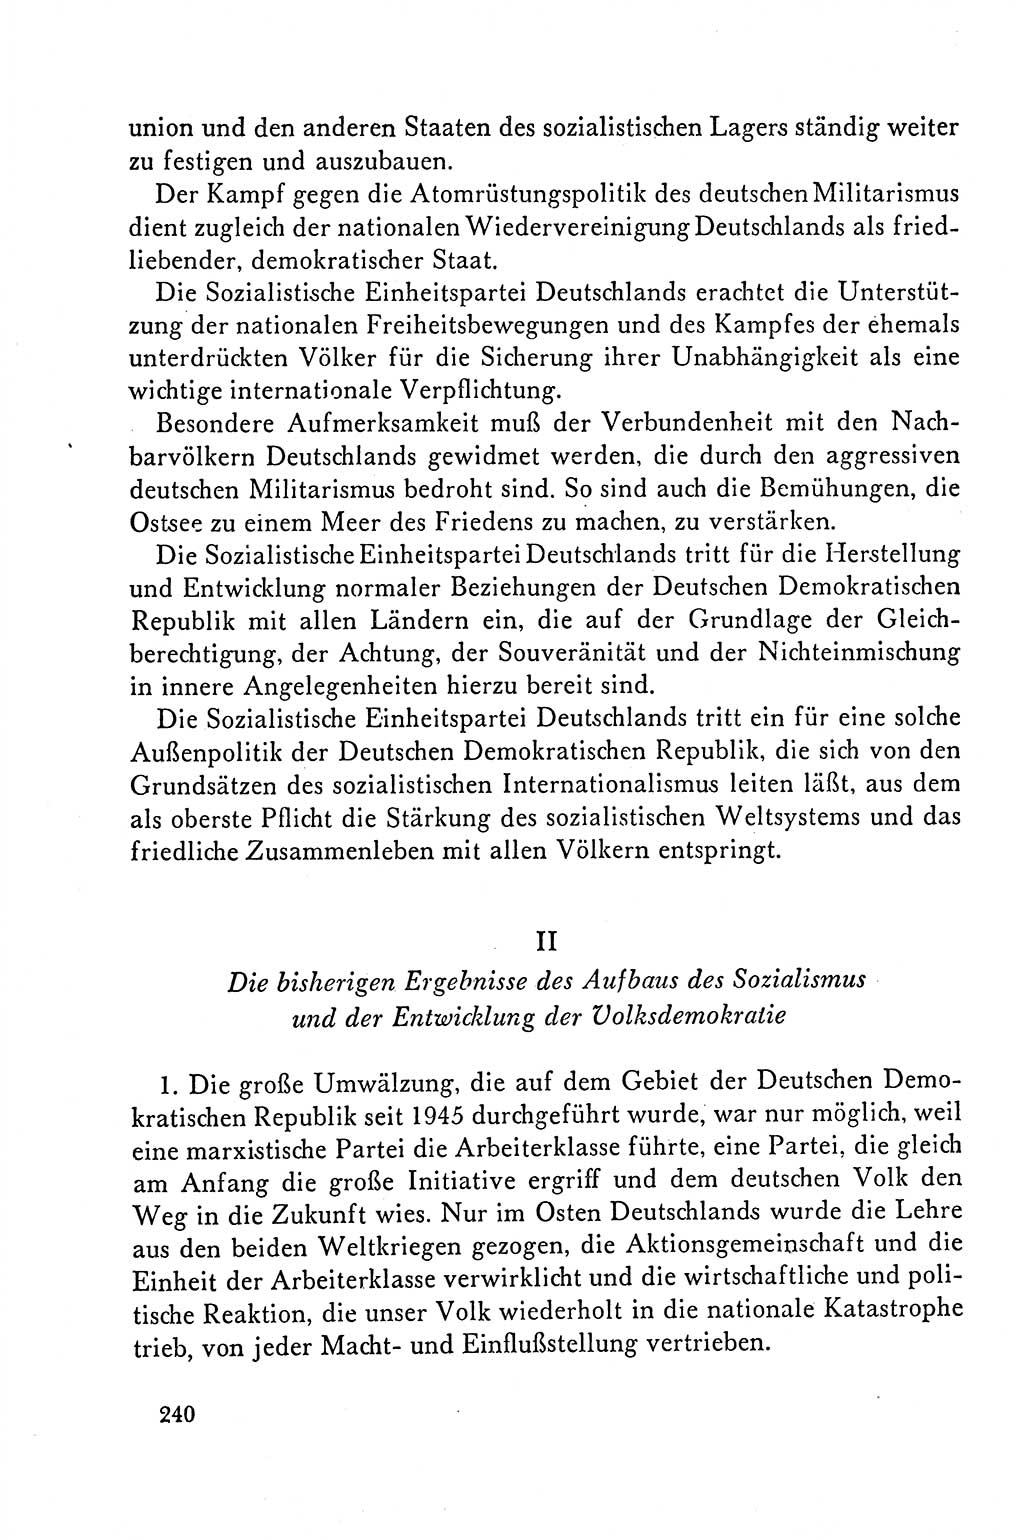 Dokumente der Sozialistischen Einheitspartei Deutschlands (SED) [Deutsche Demokratische Republik (DDR)] 1958-1959, Seite 240 (Dok. SED DDR 1958-1959, S. 240)